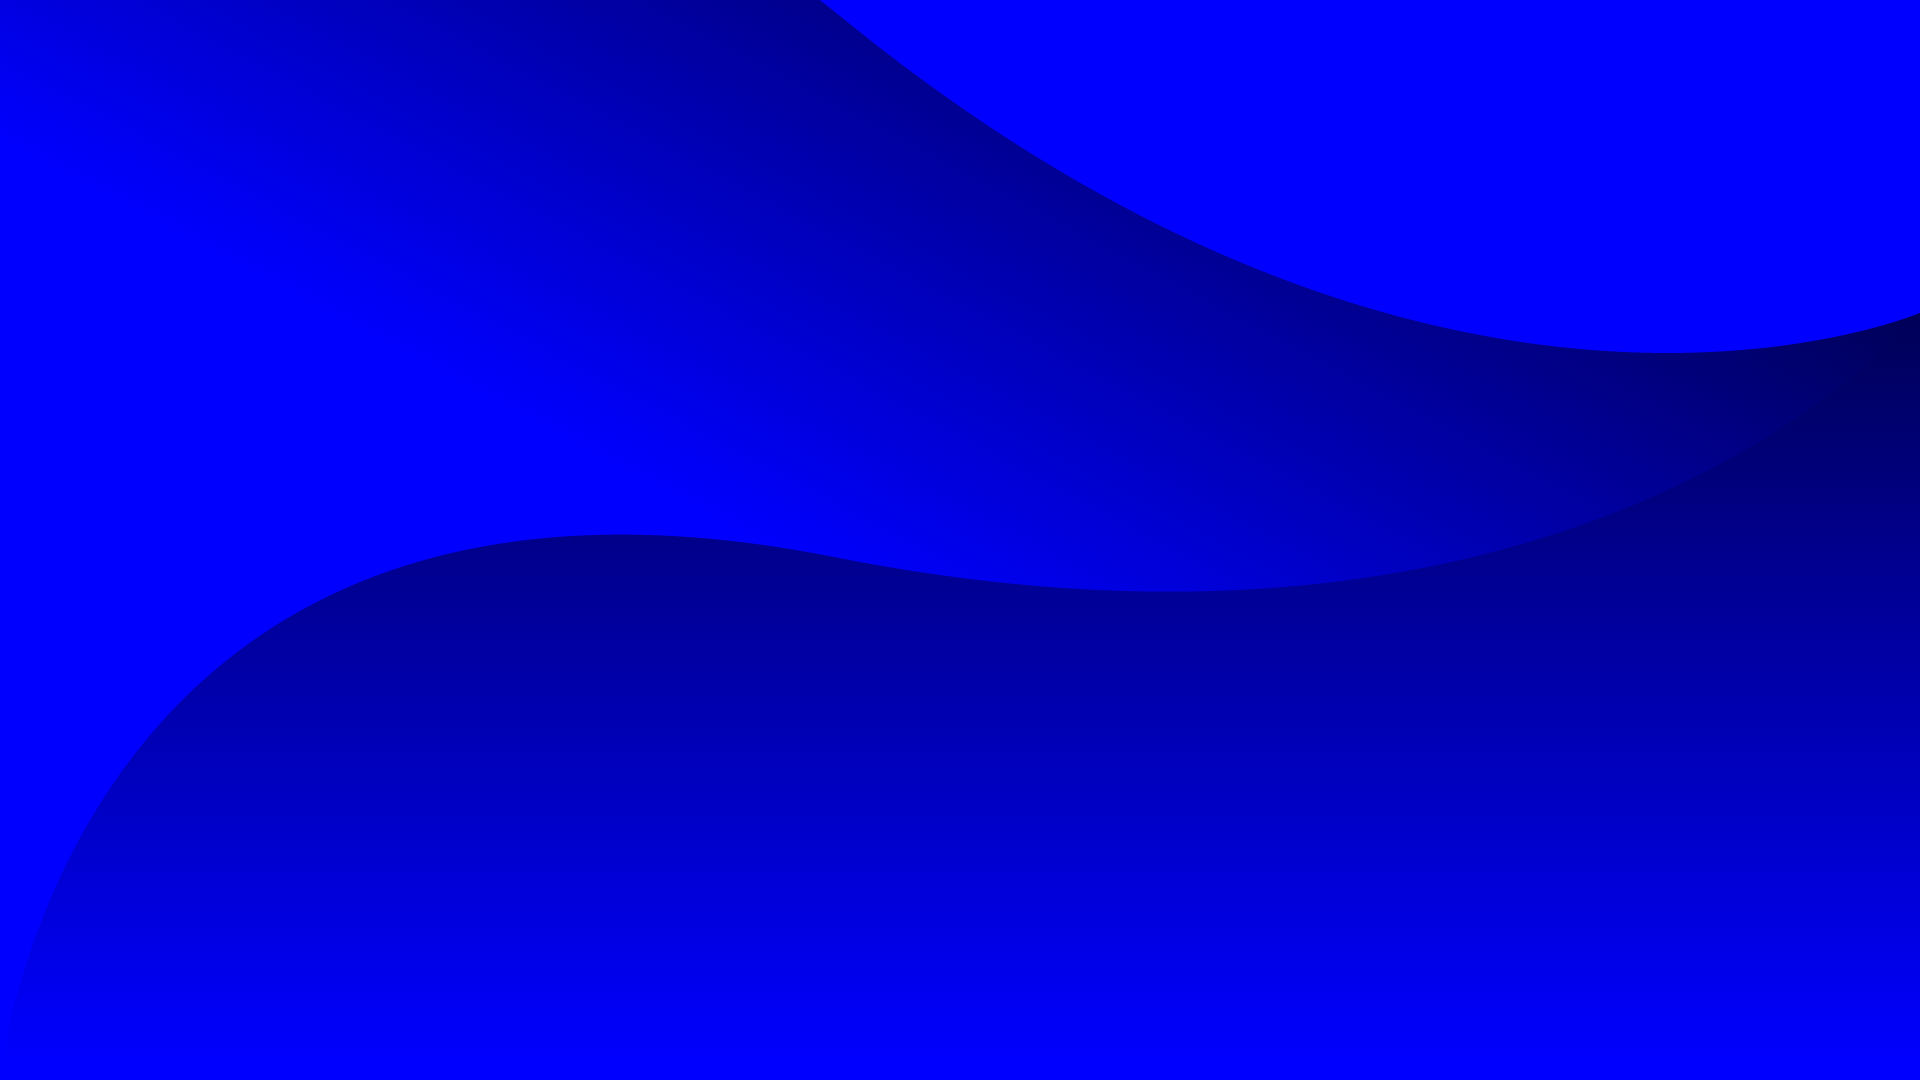 Kumpulan Background Biru Neon Yang Mencolok Masvian